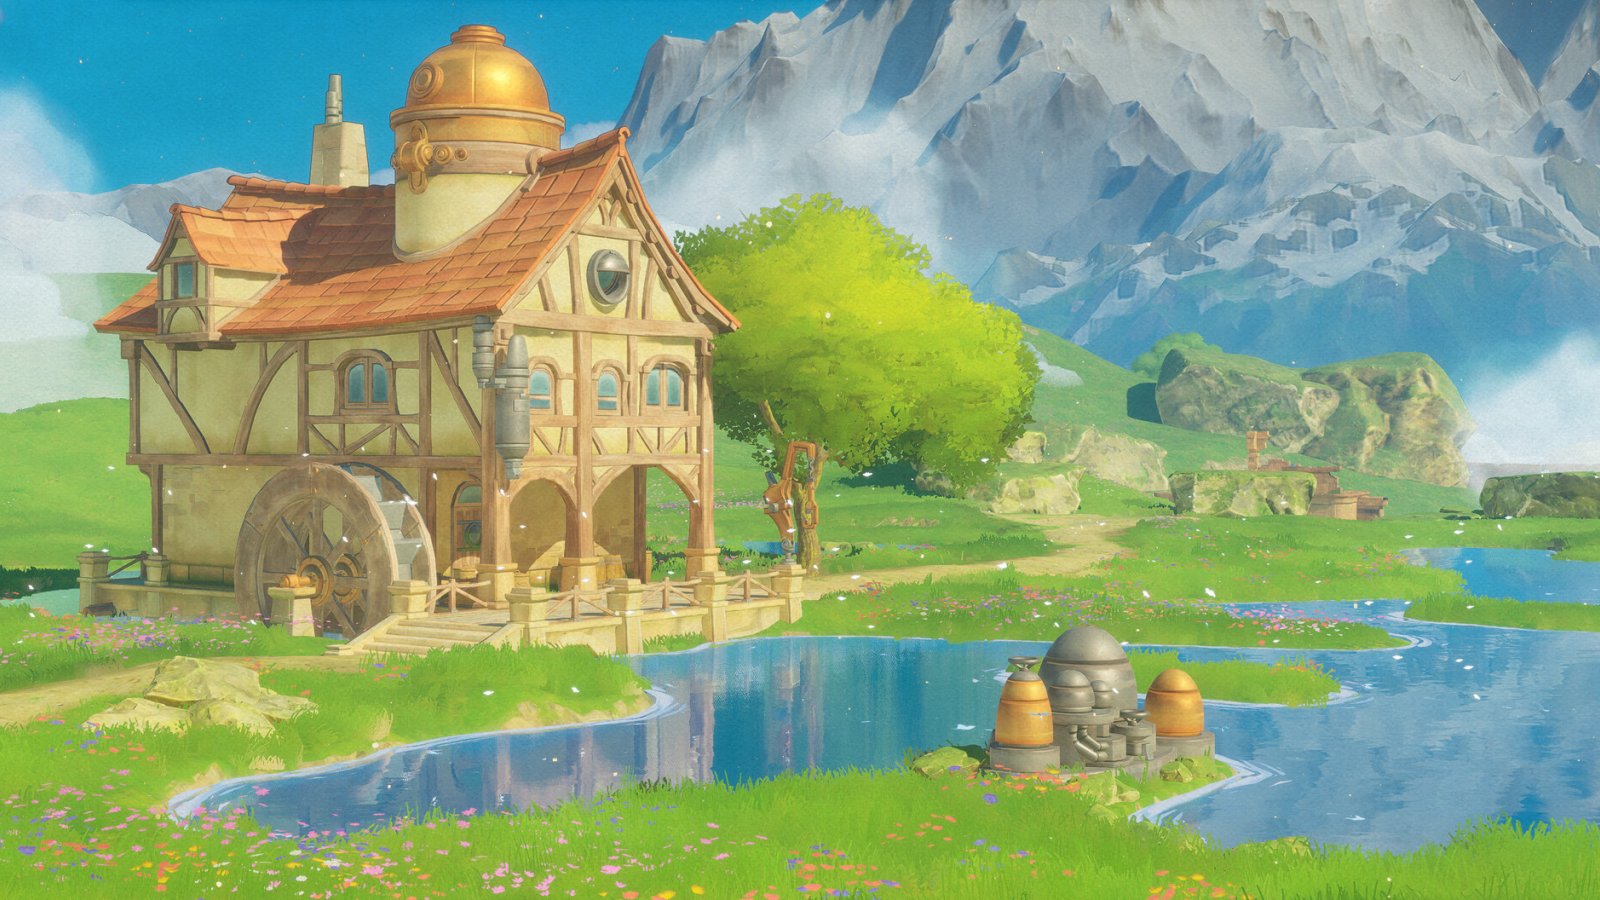 Europa annunciato per Nintendo Switch: demo disponibile per il gioco in stile Studio Ghibli